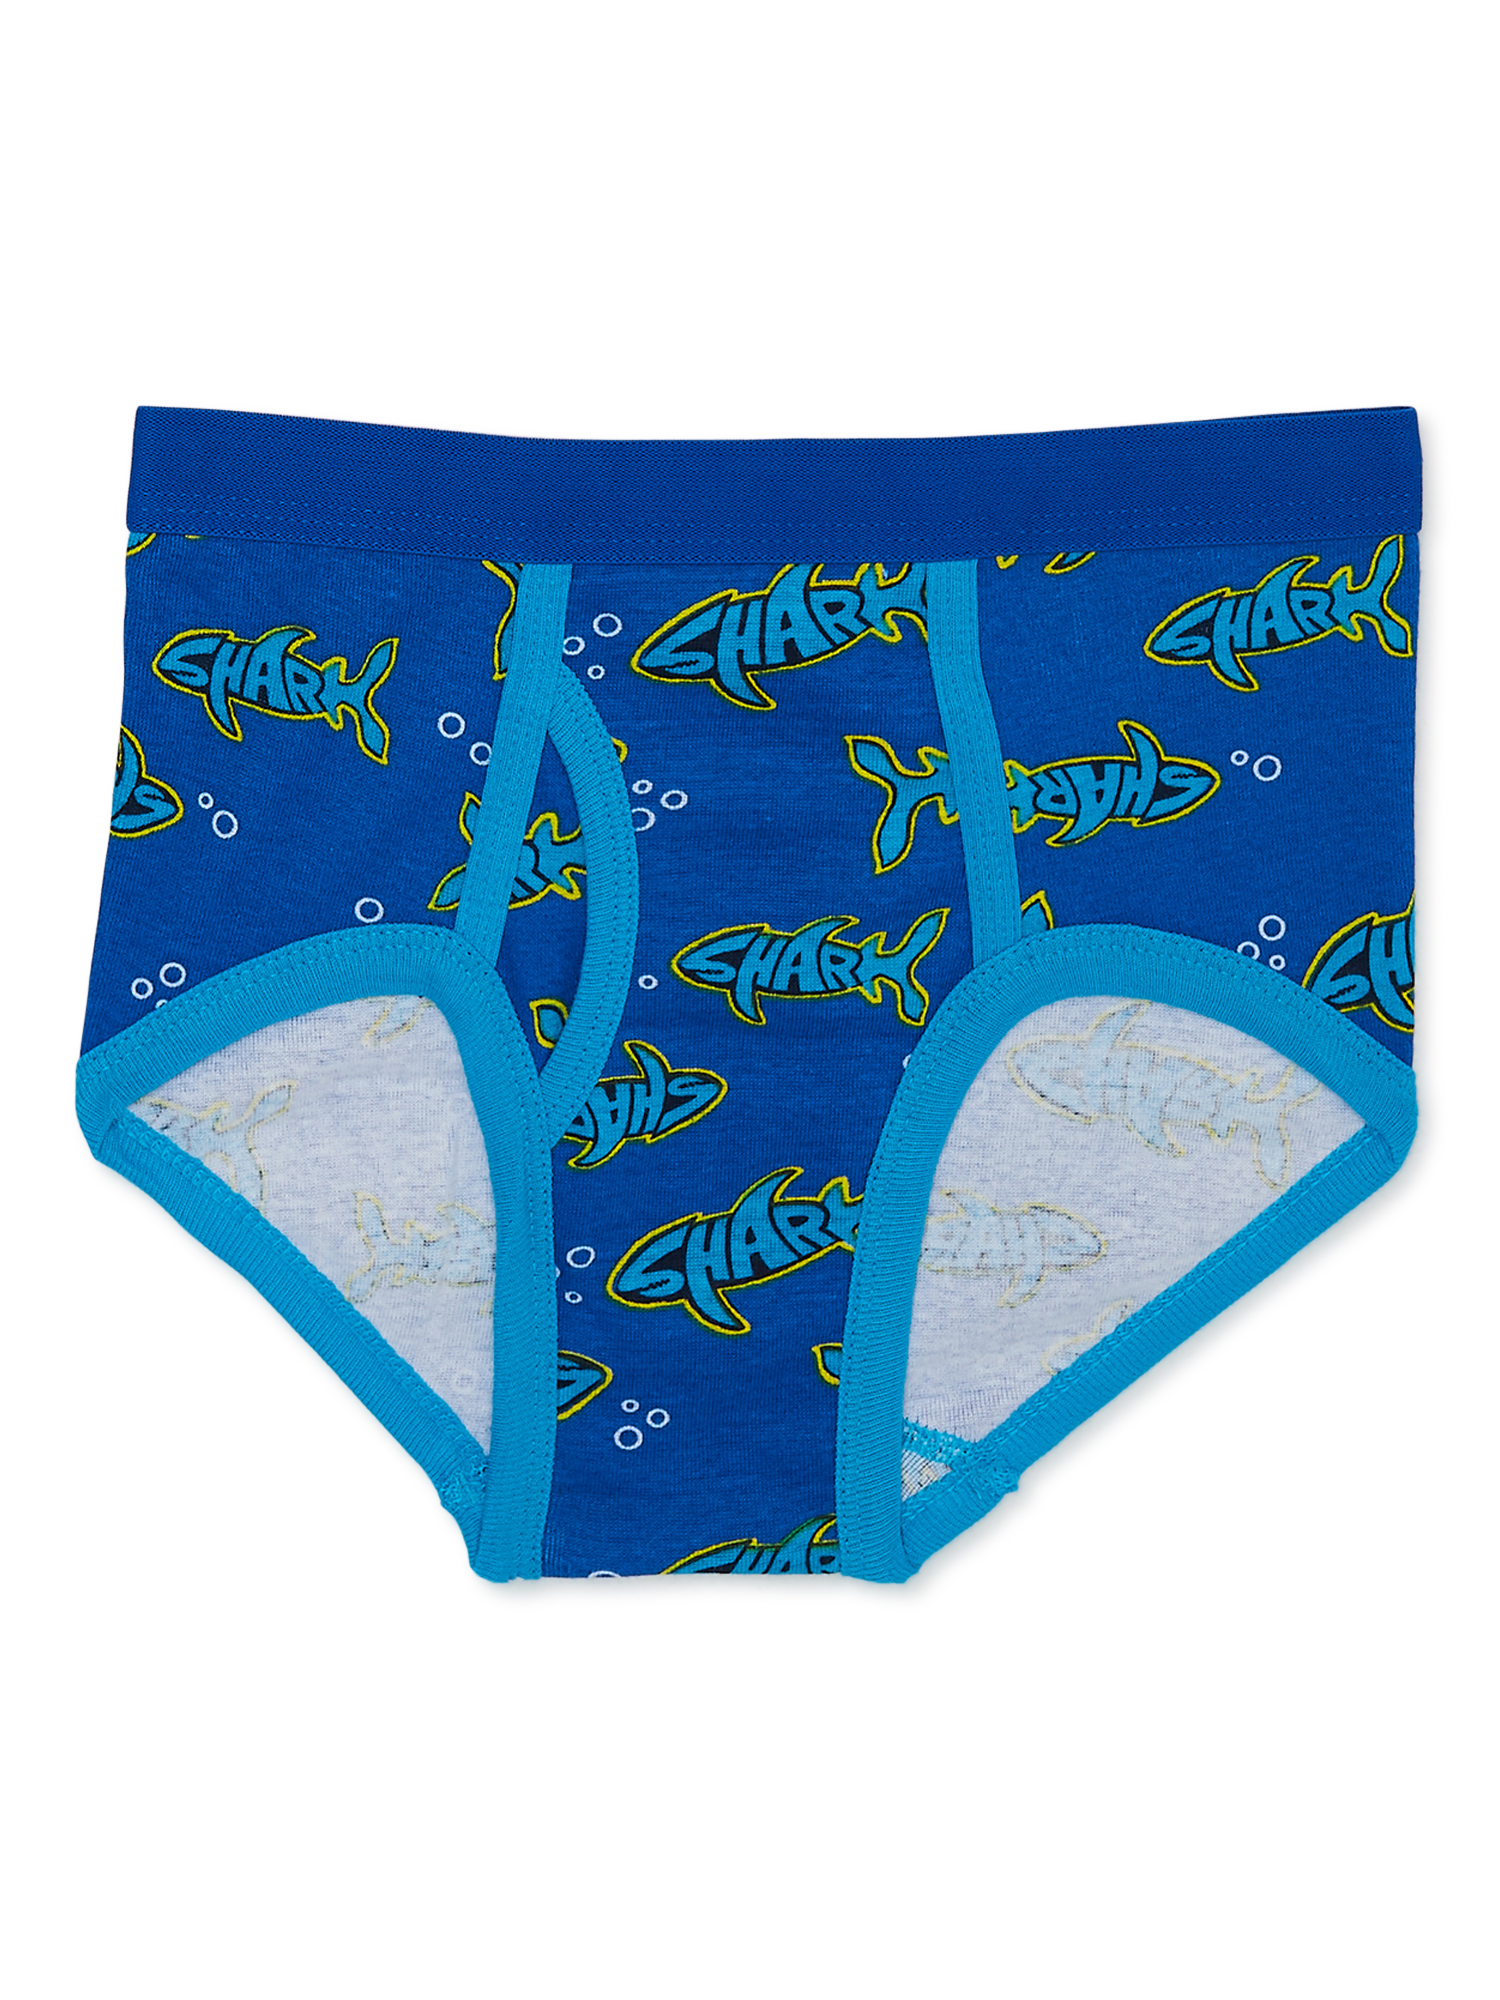 Wonder Nation Boys Brief Underwear, 5-Pack, Sizes S-XL - image 6 of 7